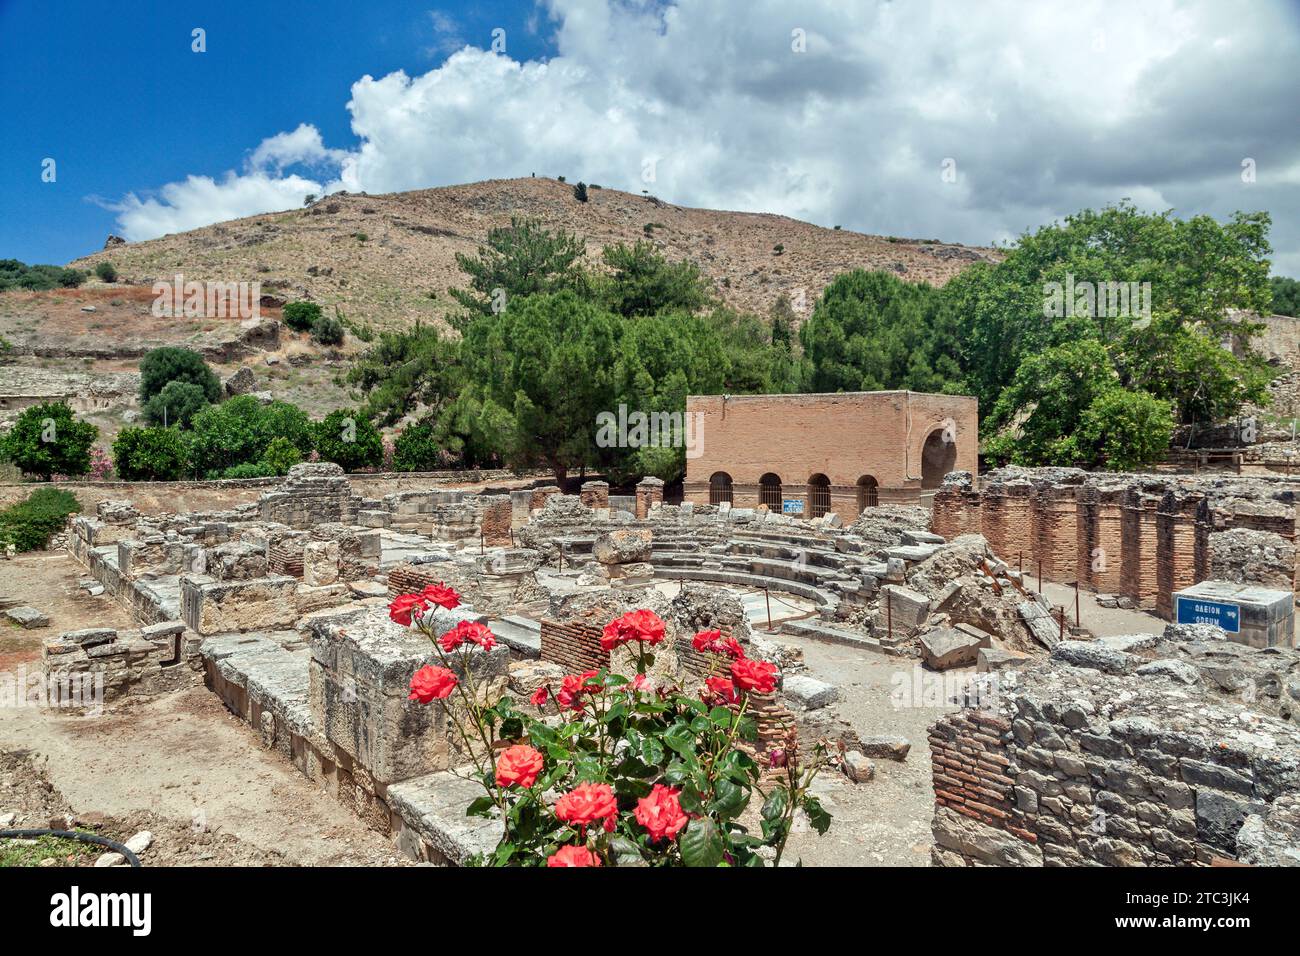 L'antico teatro di Gortys, una delle più potenti città antiche dell'isola di Creta, la Grecia, fiorì soprattutto durante l'epoca romana e l'inizio dell'era bizantina. Foto Stock